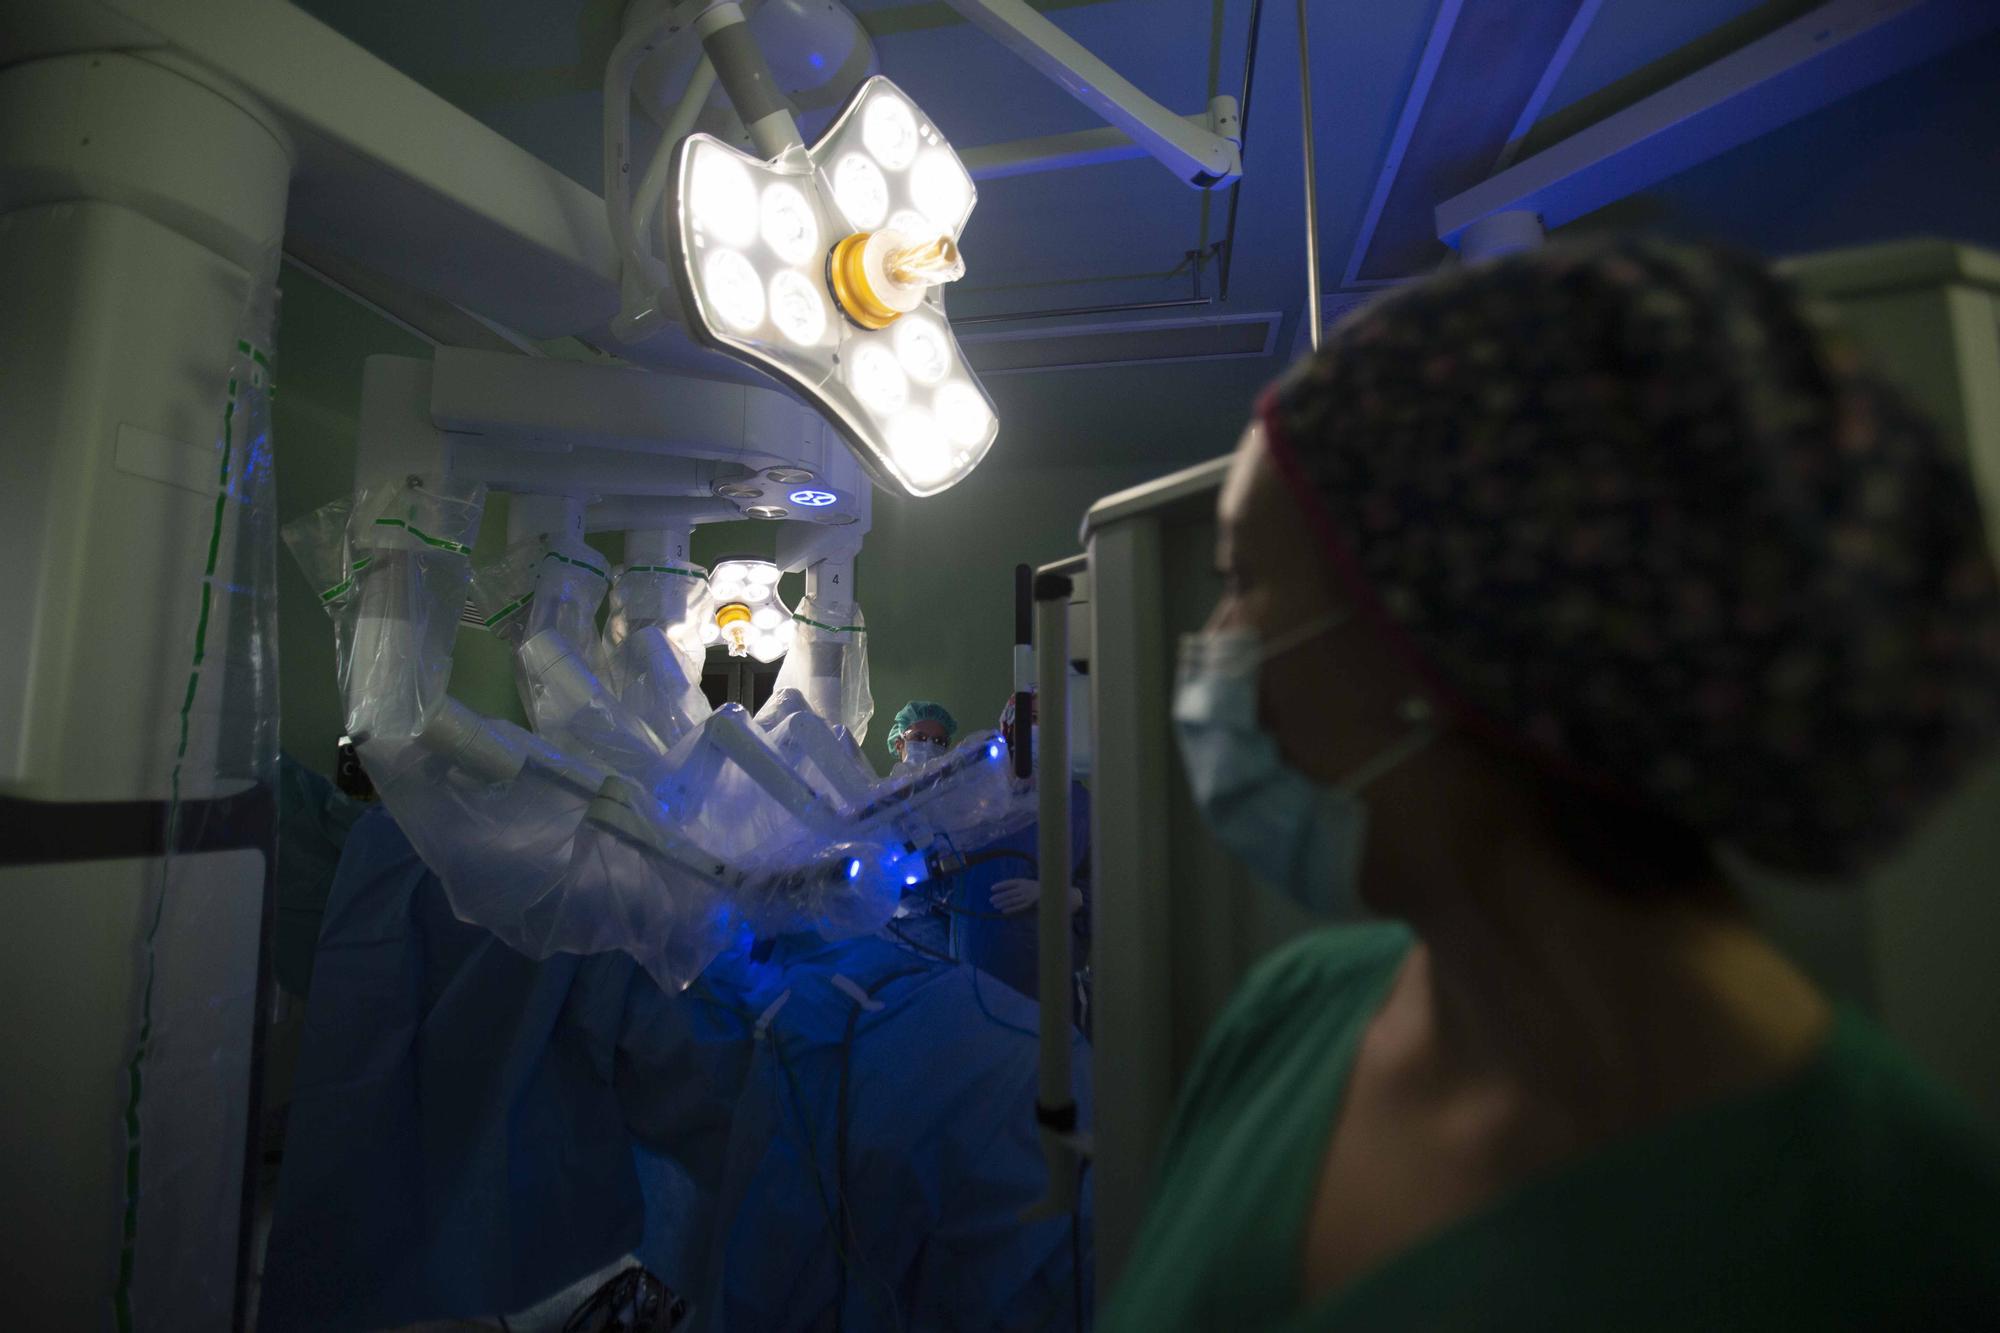 La cirugía robótica entra en quirófano en la provincia